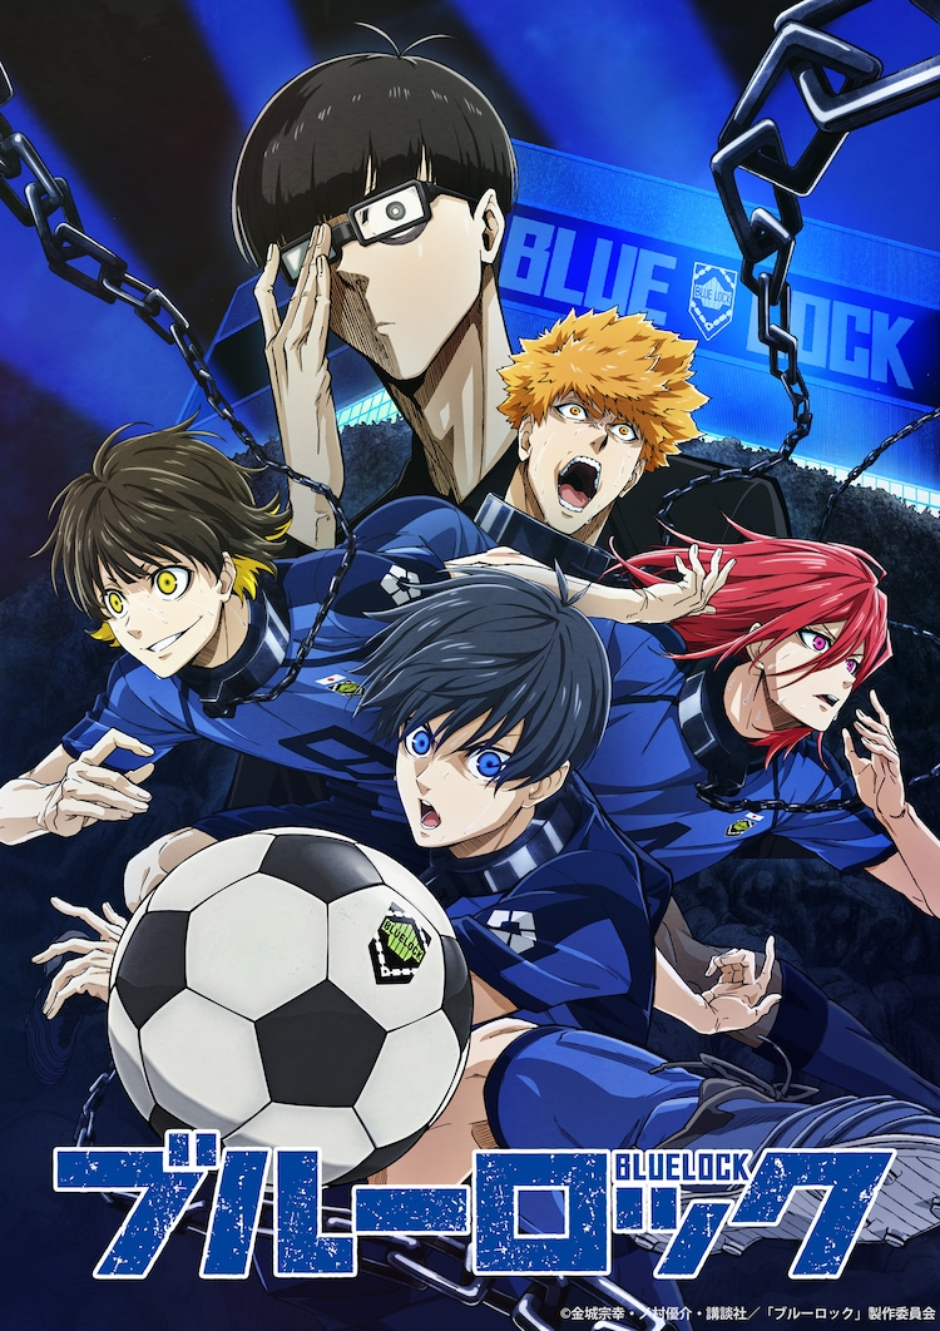 Qual é o meu personagem favorito? #bluelock #anime #futebol #tiktokesp